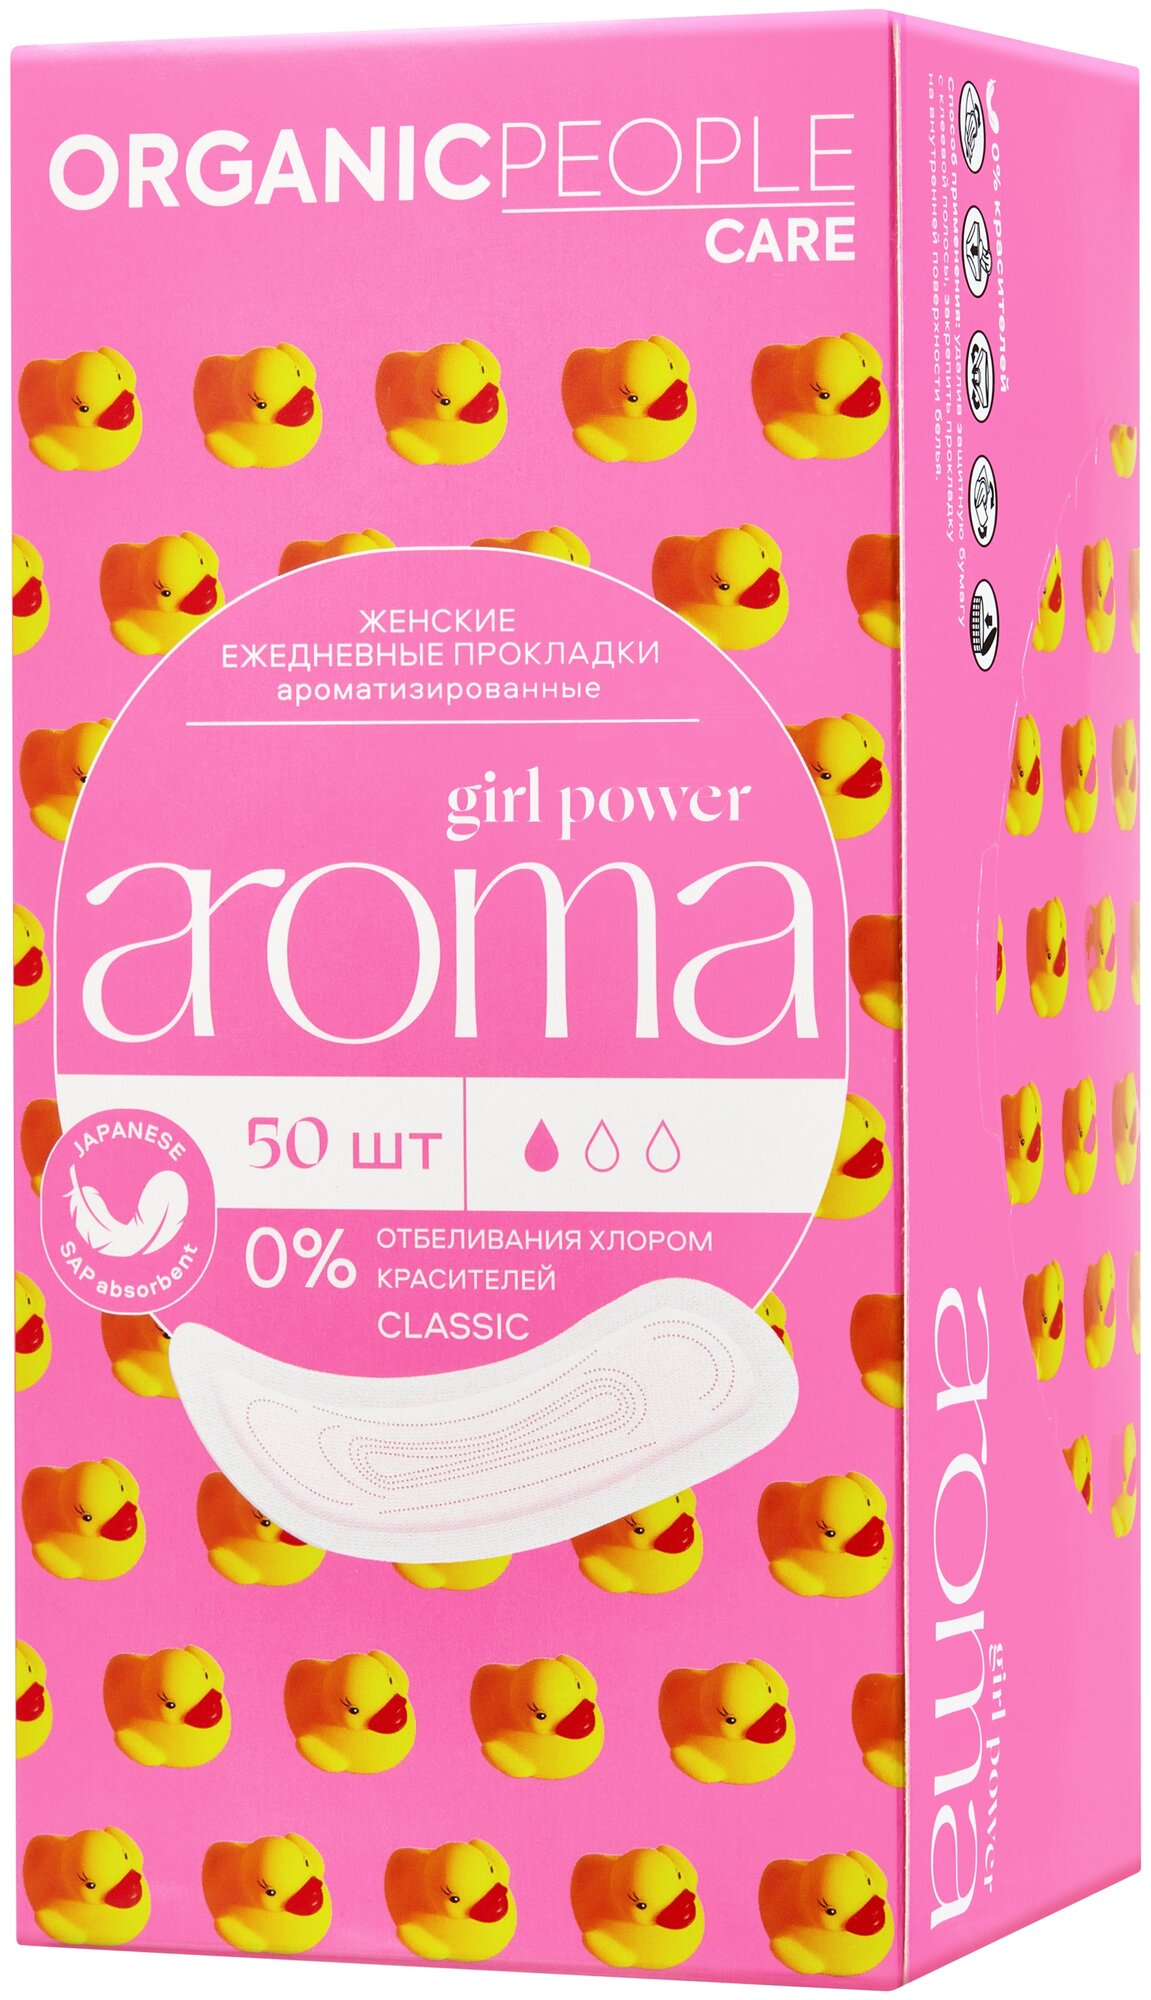 Прокладки Organic People Girl Power ежедневные ароматизированные Aroma Classic 20шт Планета Органика - фото №11